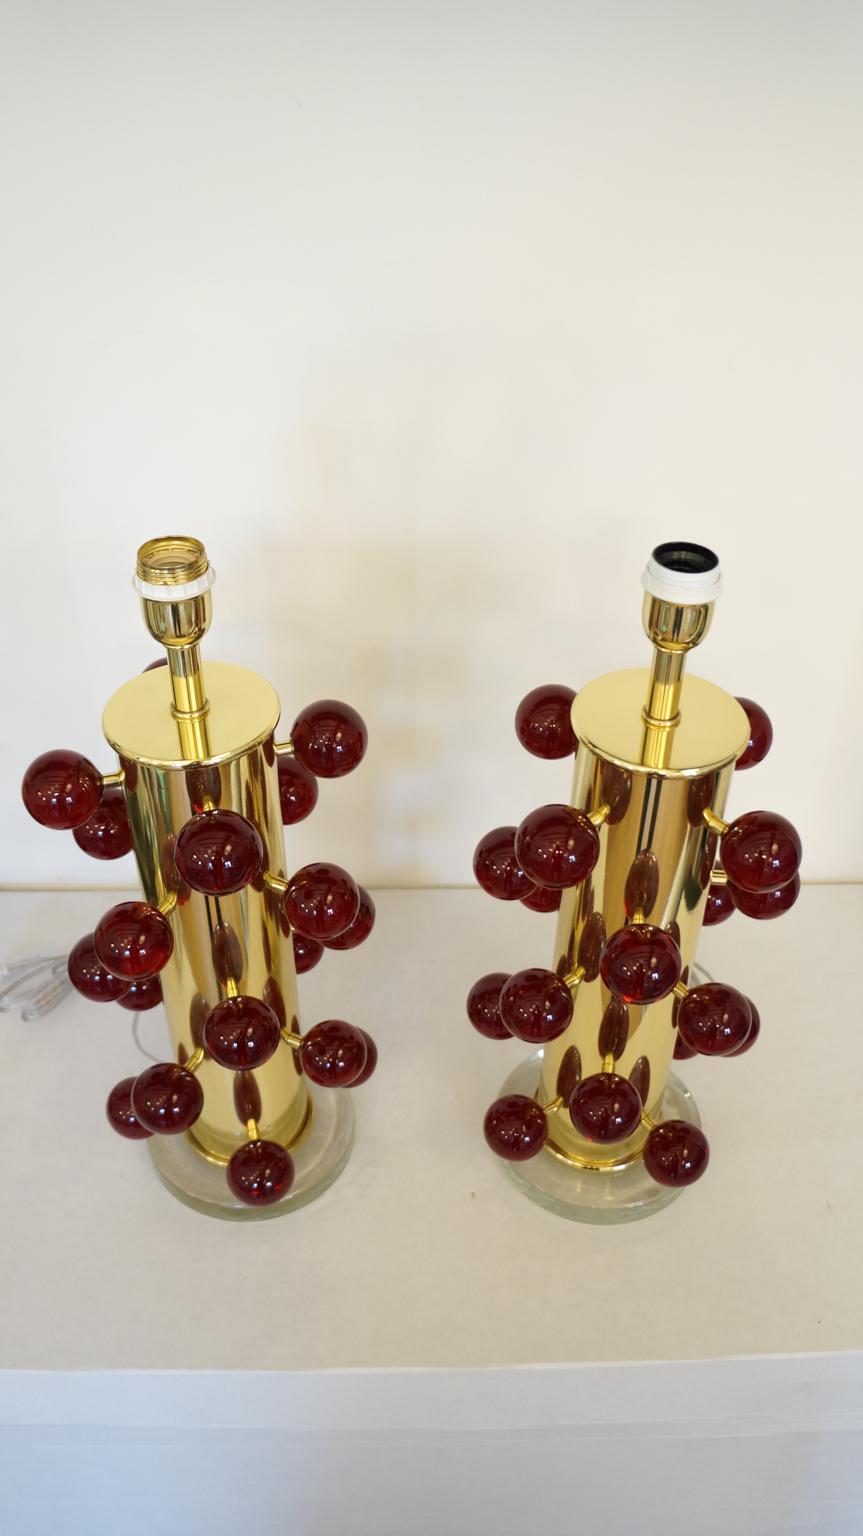 Exklusives Paar Tischlampen aus Murano-Glas mit roten Pulegoso-Kugeln, transparentem Kristallsockel und verchromtem Rahmen. 
Pulegoso Verarbeitung sind Blasen im Inneren der Farbe.
Die Lampe wurde mit großer Sorgfalt und Präzision von unserem